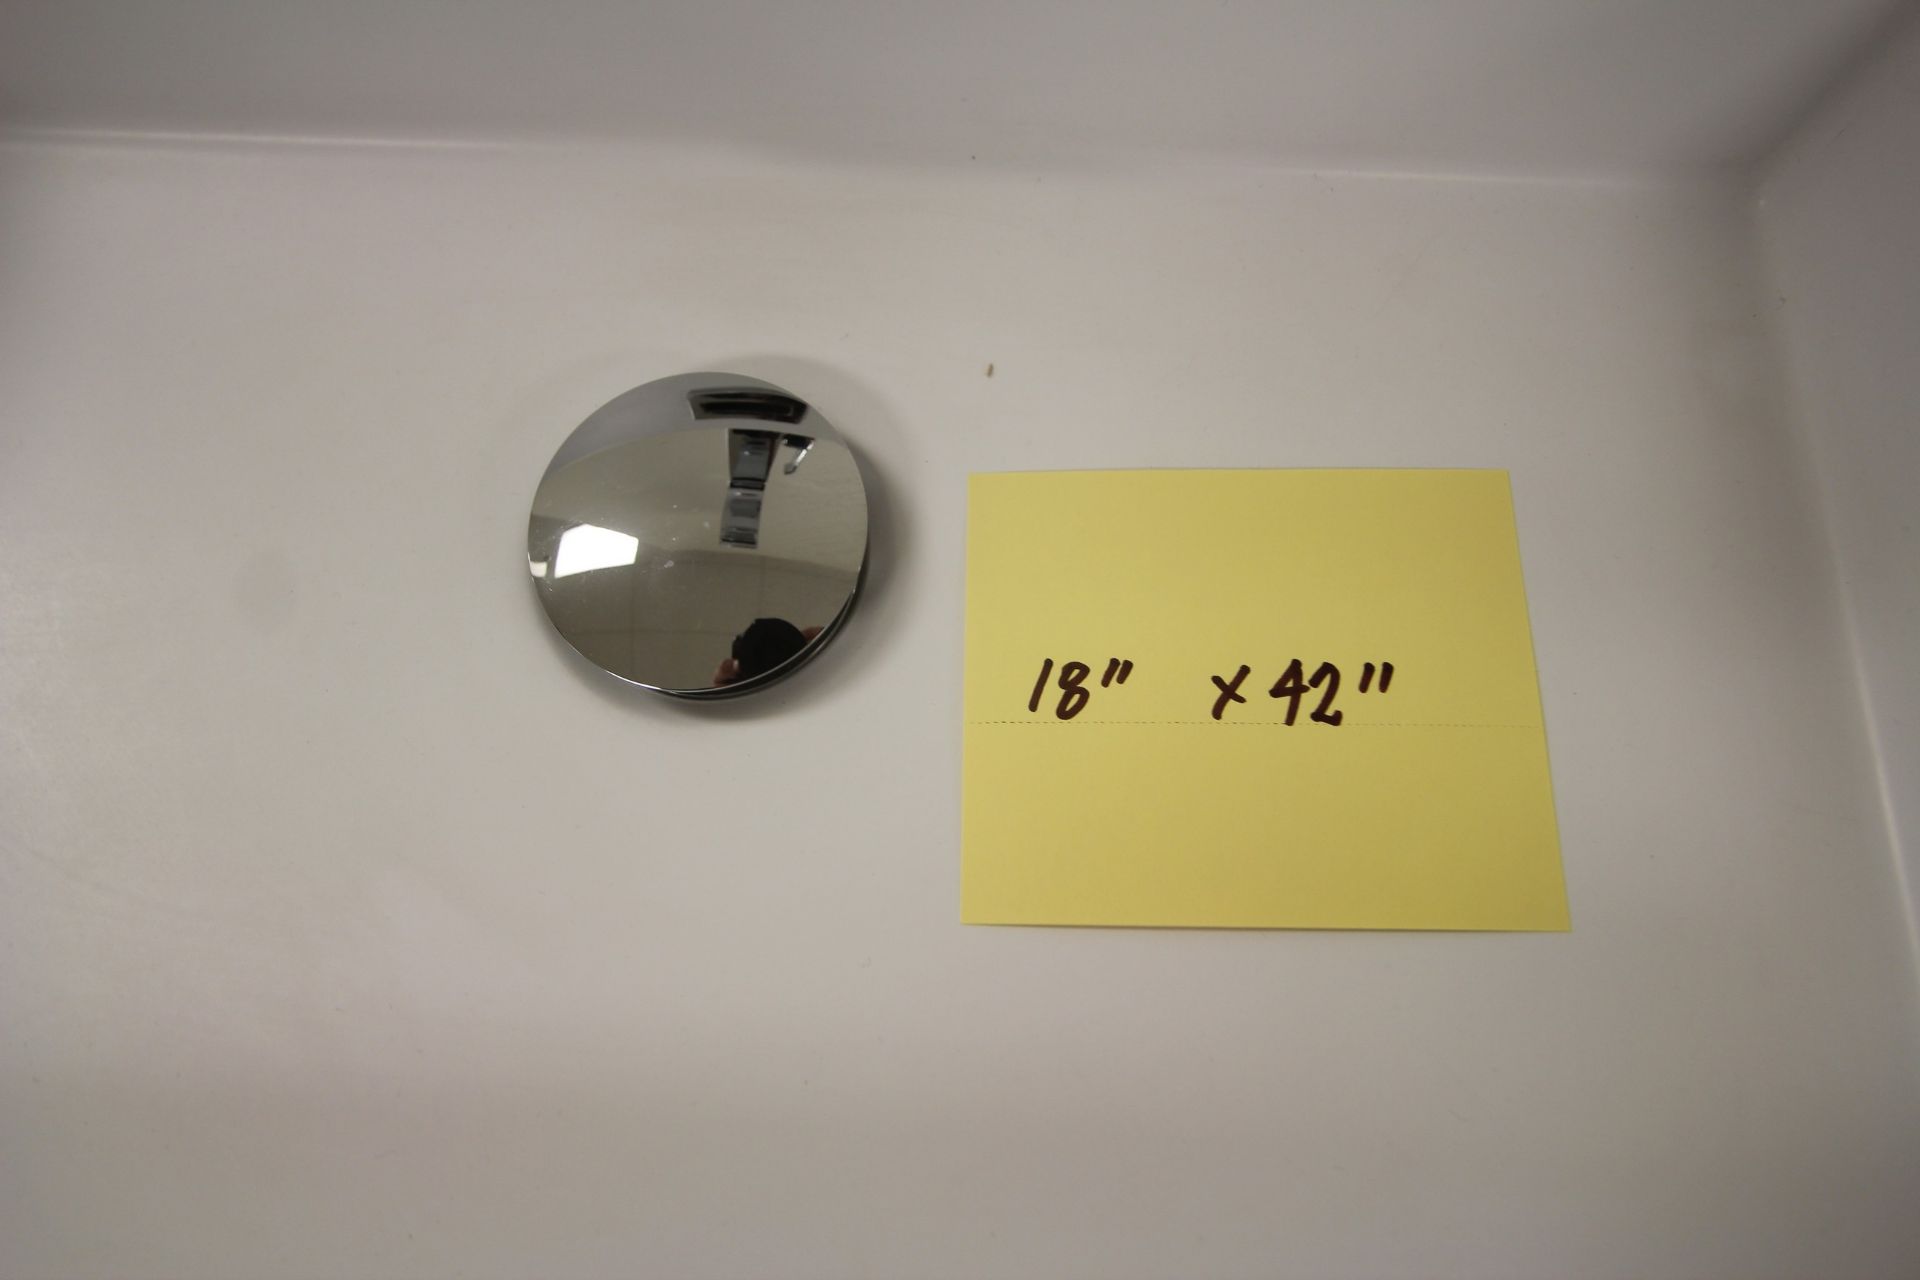 SHOWROOM DISPLAY FLOATING BATHROOM VANITY W/ SINK, FAUCET, CUPBOARDS, 18" X 42", BEACHWOOD - Image 4 of 4